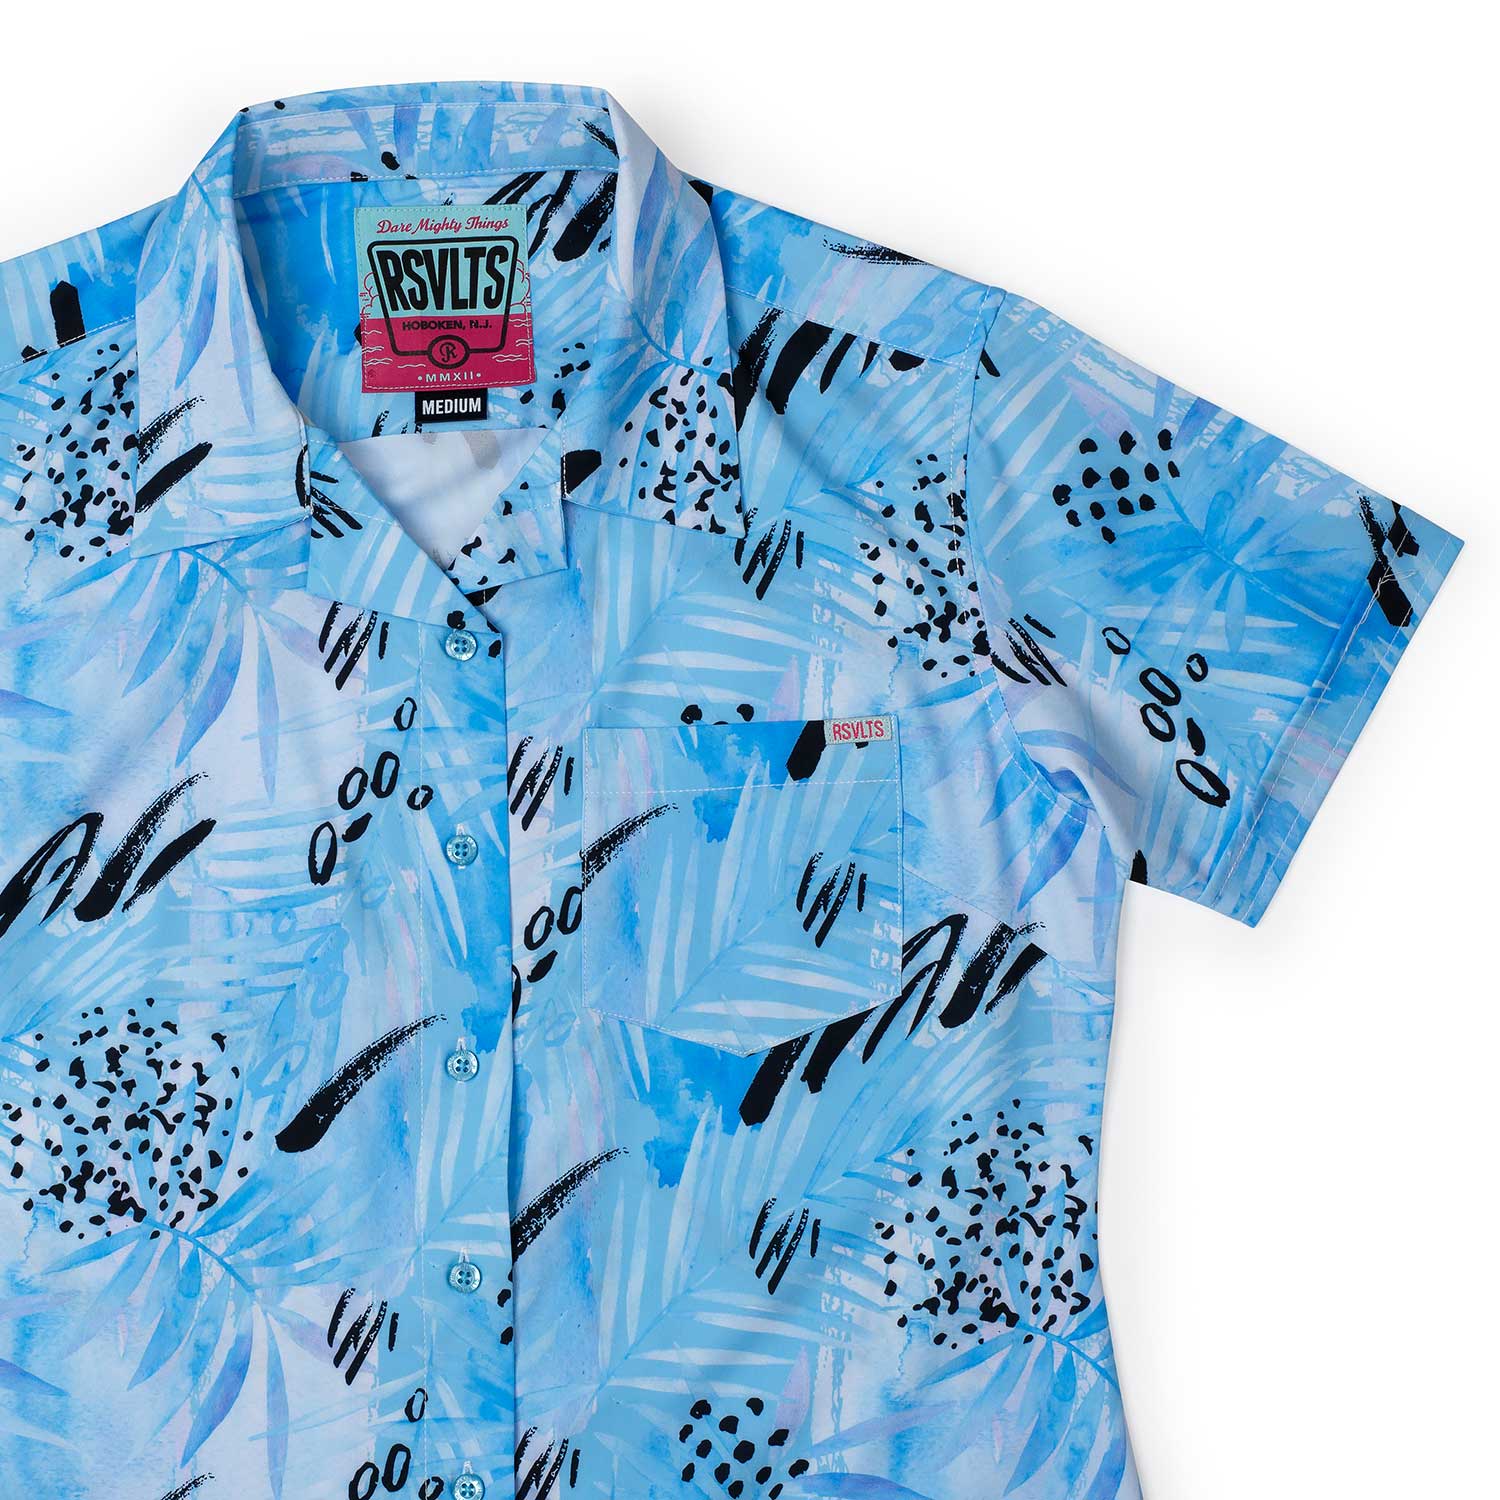  Blueberry Men's Shirt Long-Sleeve Button Hawaiian